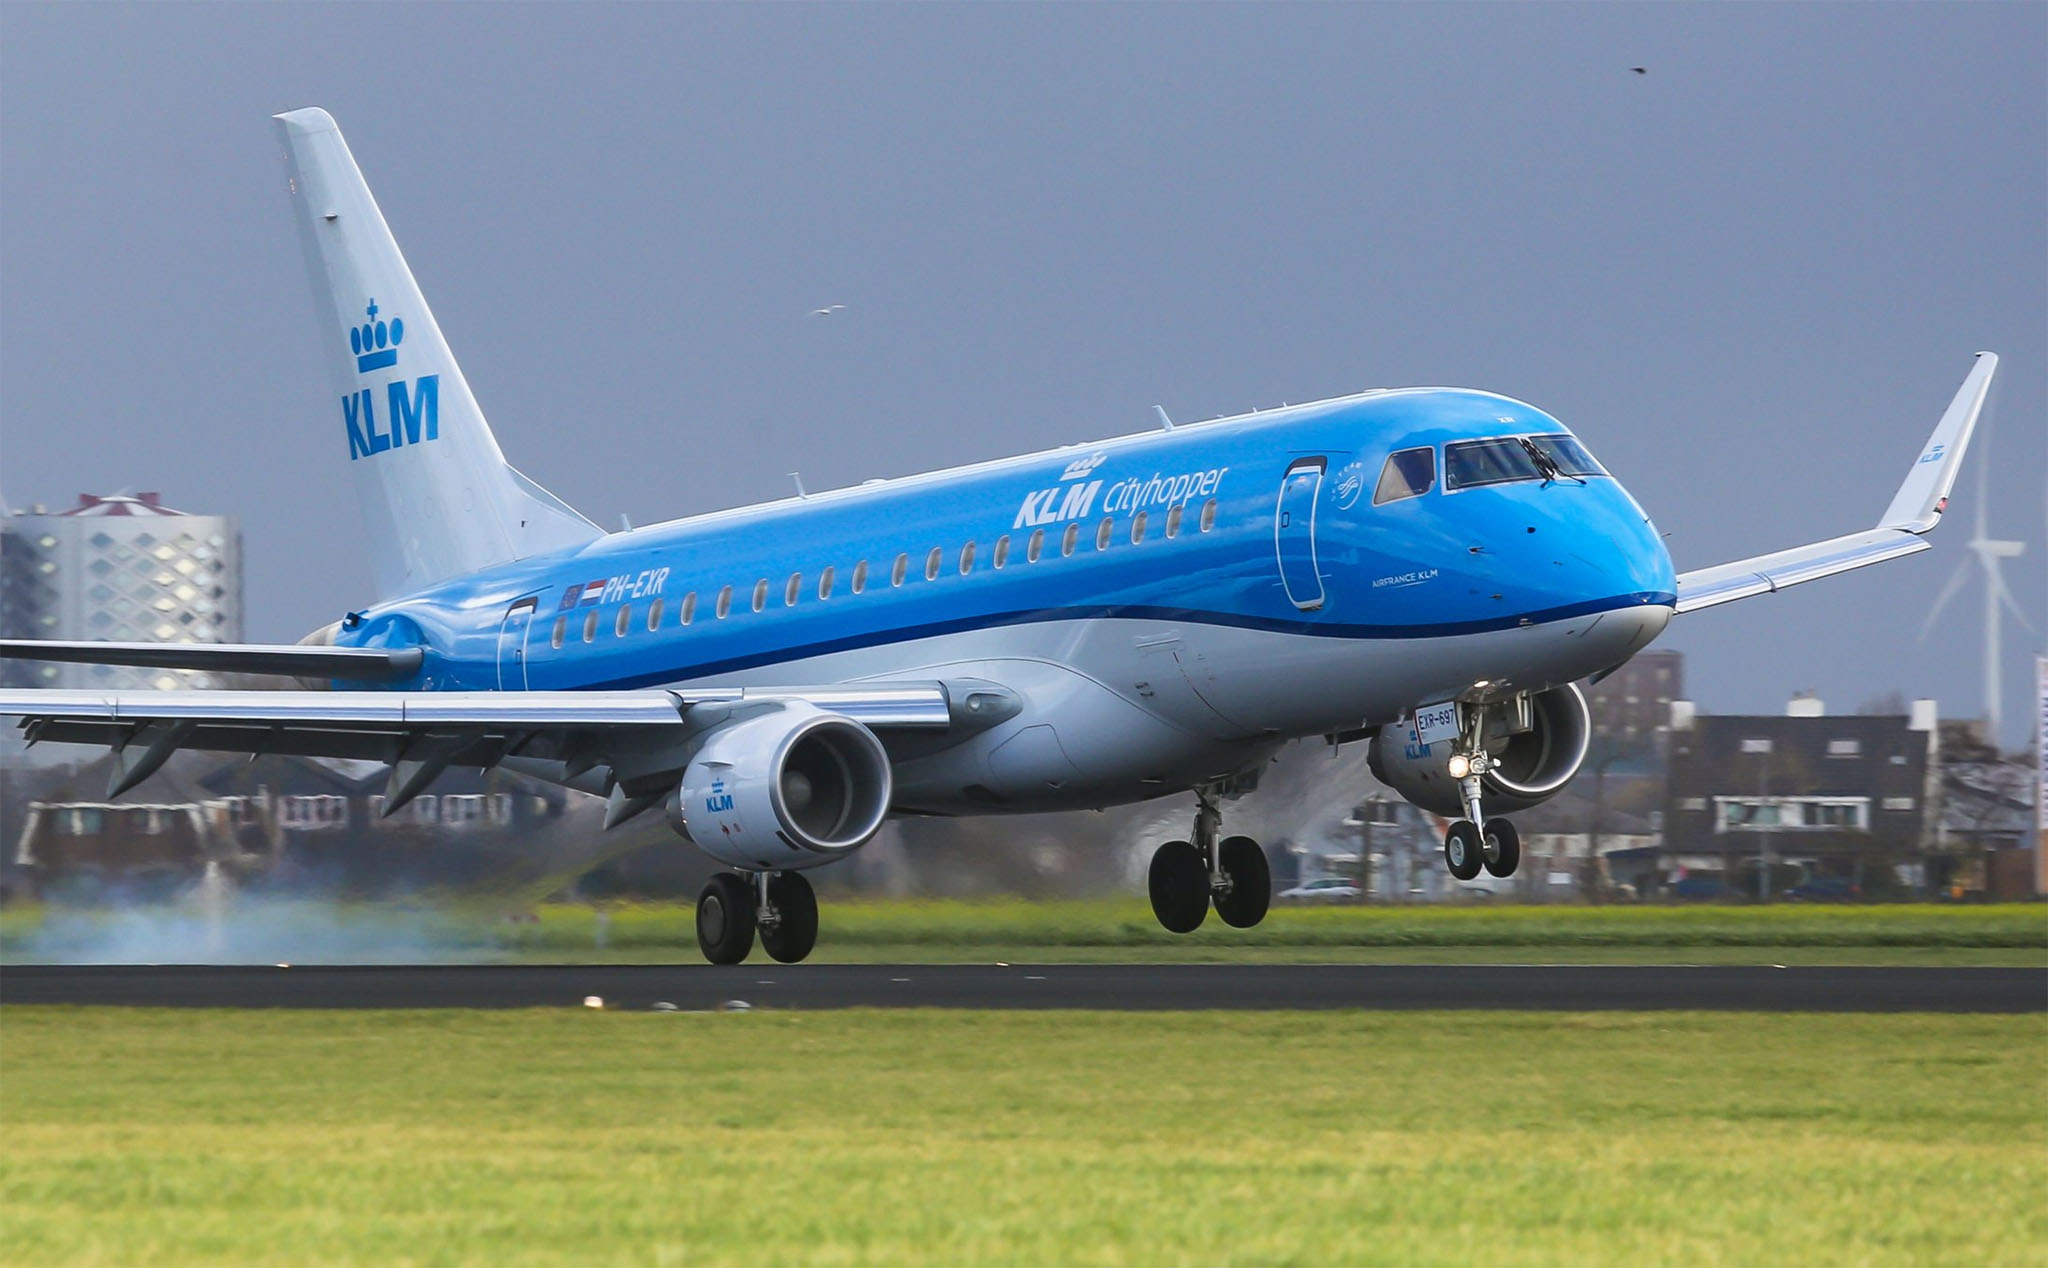 "Chỉ ra ghế ngồi chỗ nào trên máy bay dễ chết nhất", hãng hàng không KLM phải xin lỗi